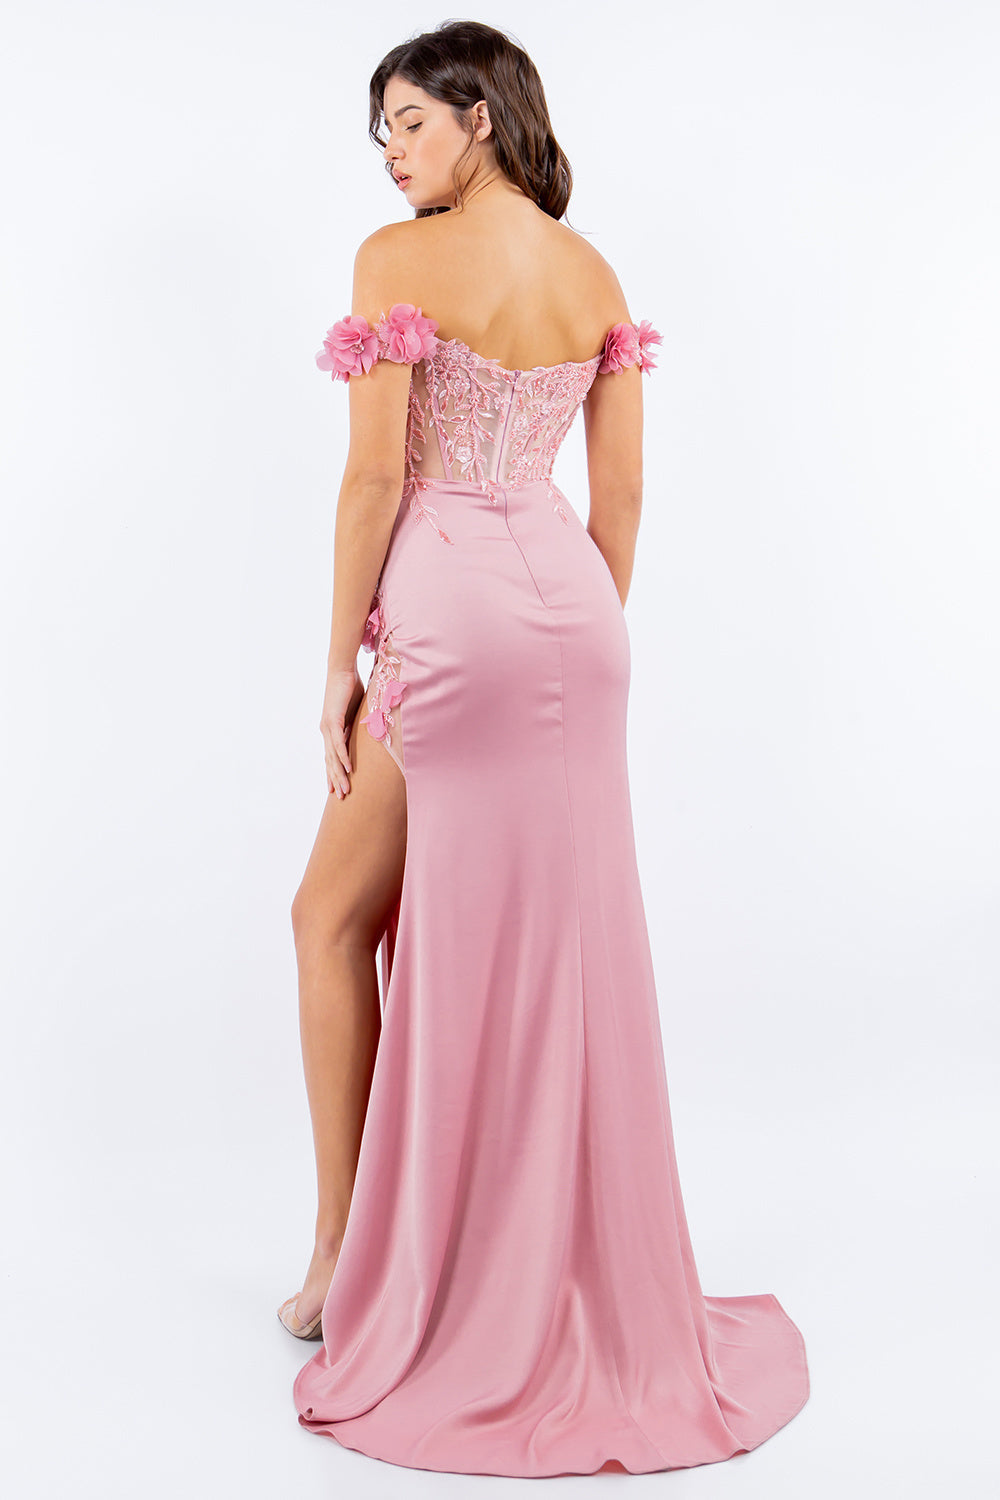 3D Floral Applique Off Shouler Fitted Skirt Side Slit Long Prom Dress CU8050J Elsy Style Prom Dress